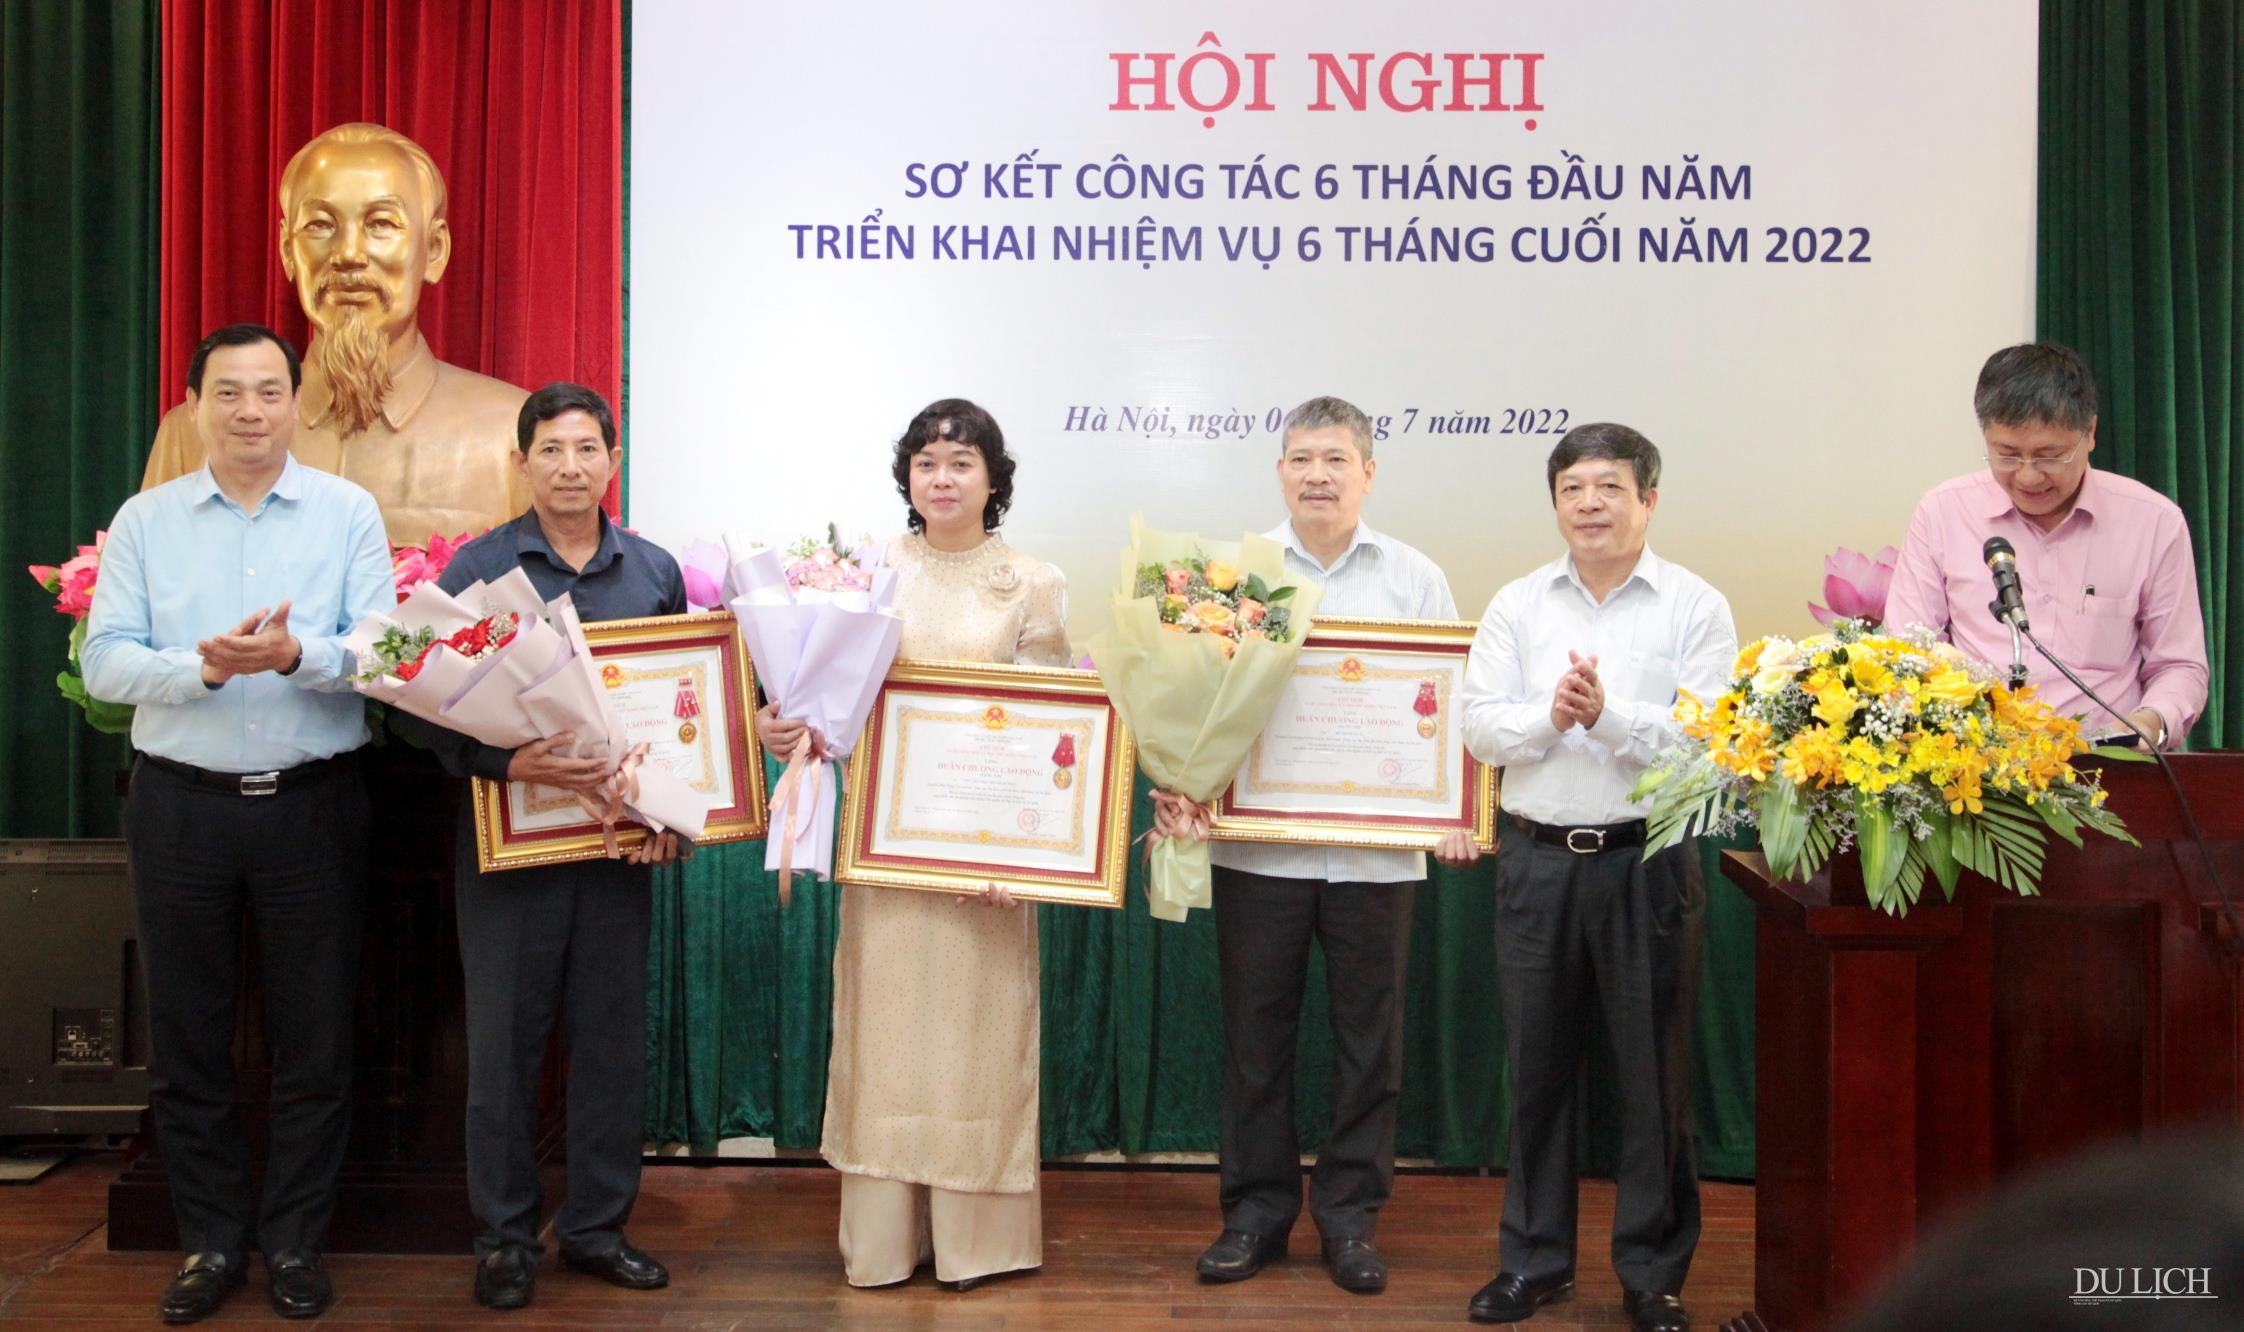 Thứ trưởng Đoàn Văn Việt trao Huân chương Lao động cho đồng chí Lê Tuấn Anh, Nguyễn Thị Thanh Hương và Đỗ Minh Tuấn